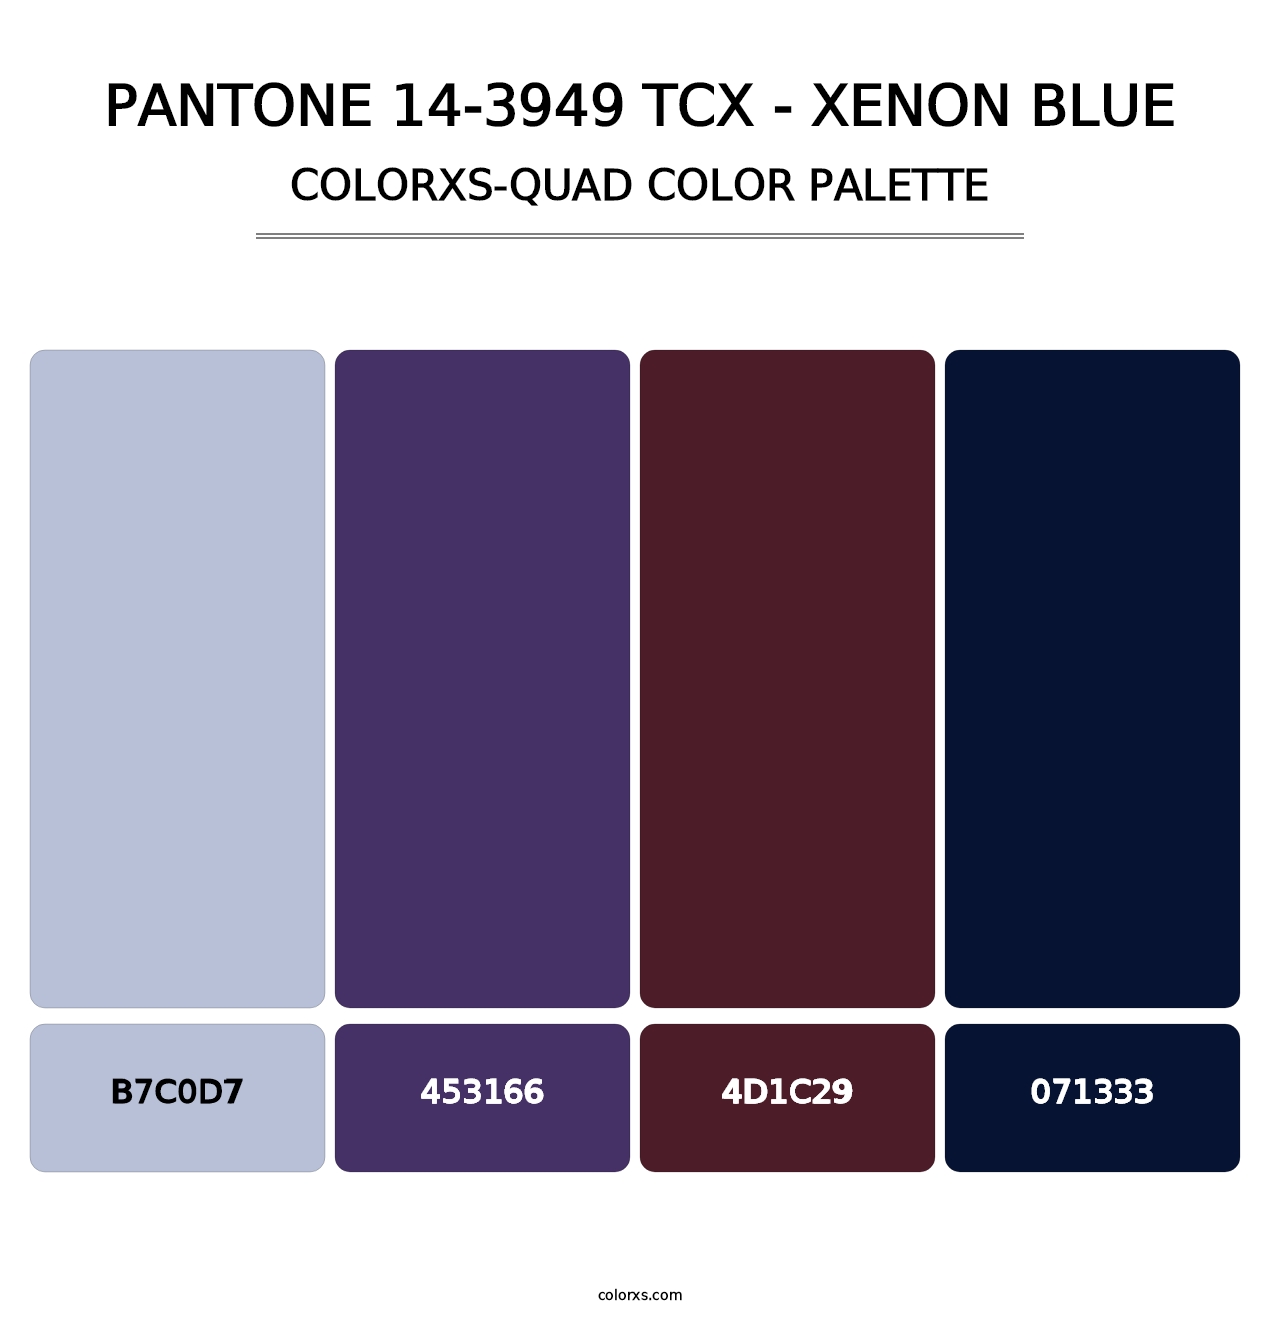 PANTONE 14-3949 TCX - Xenon Blue - Colorxs Quad Palette